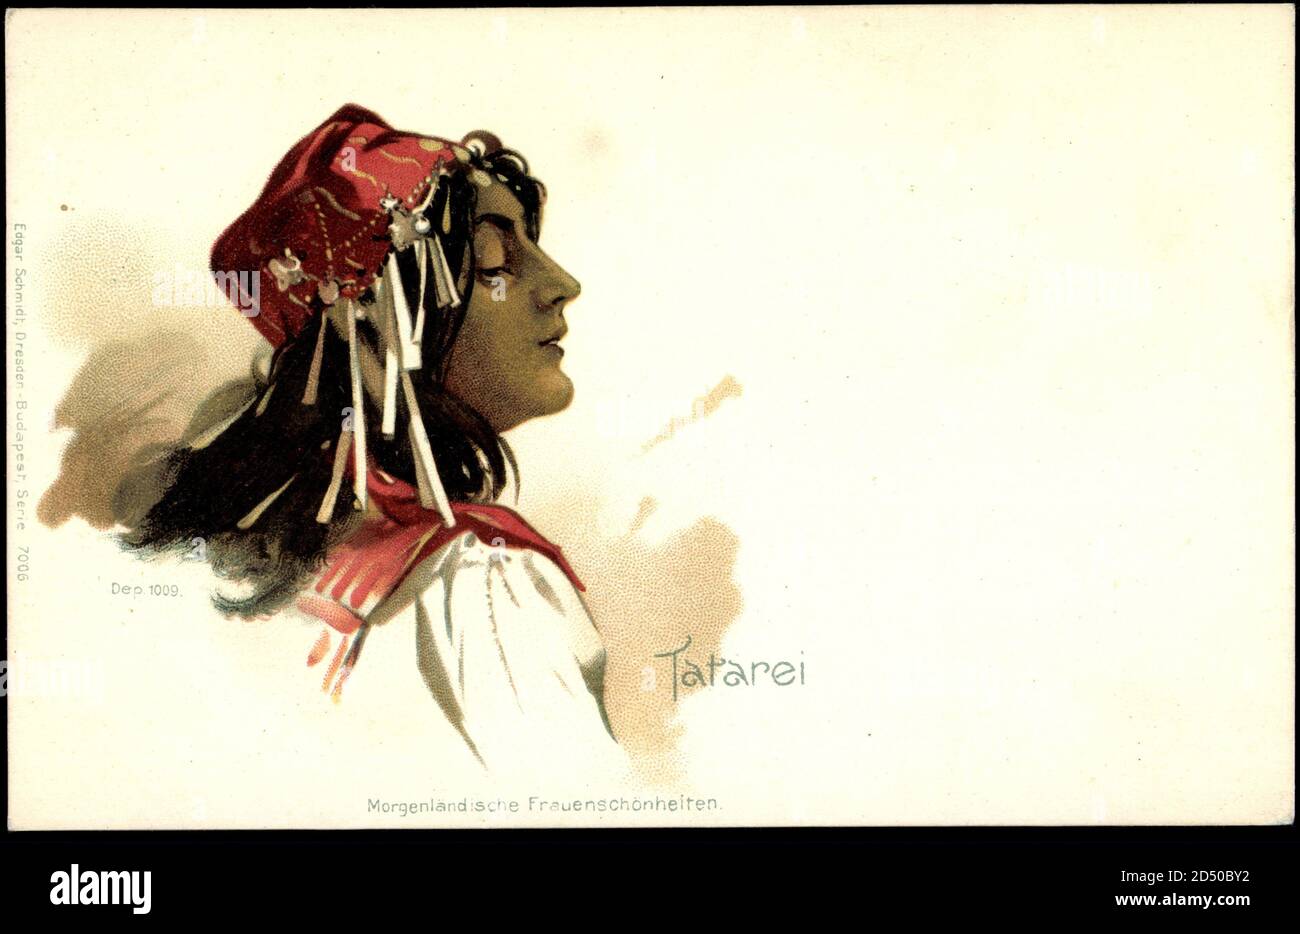 Tatarei, Morgenländische Frauenschönheiten, Kopfbedeckung mit Verzierung | usage worldwide Stock Photo